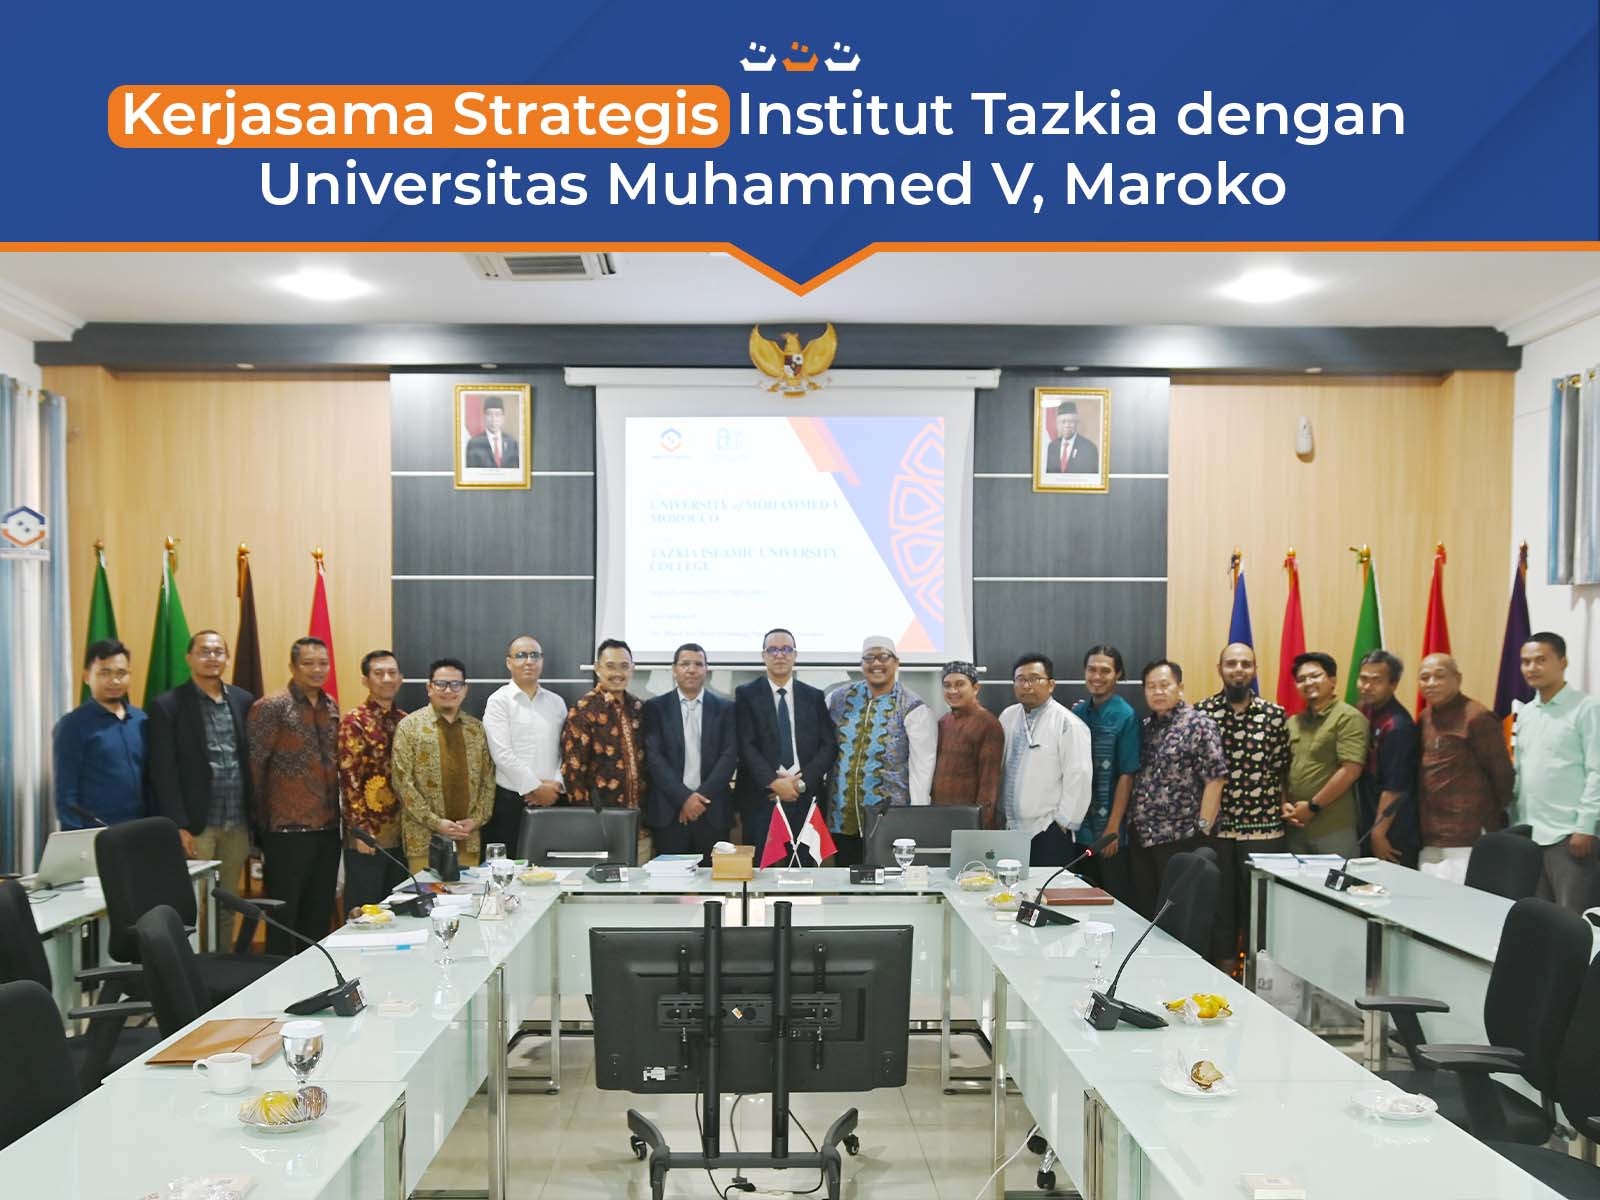 Kerjasama Strategis Institut Tazkia dengan Universitas Muhammed V, Maroko